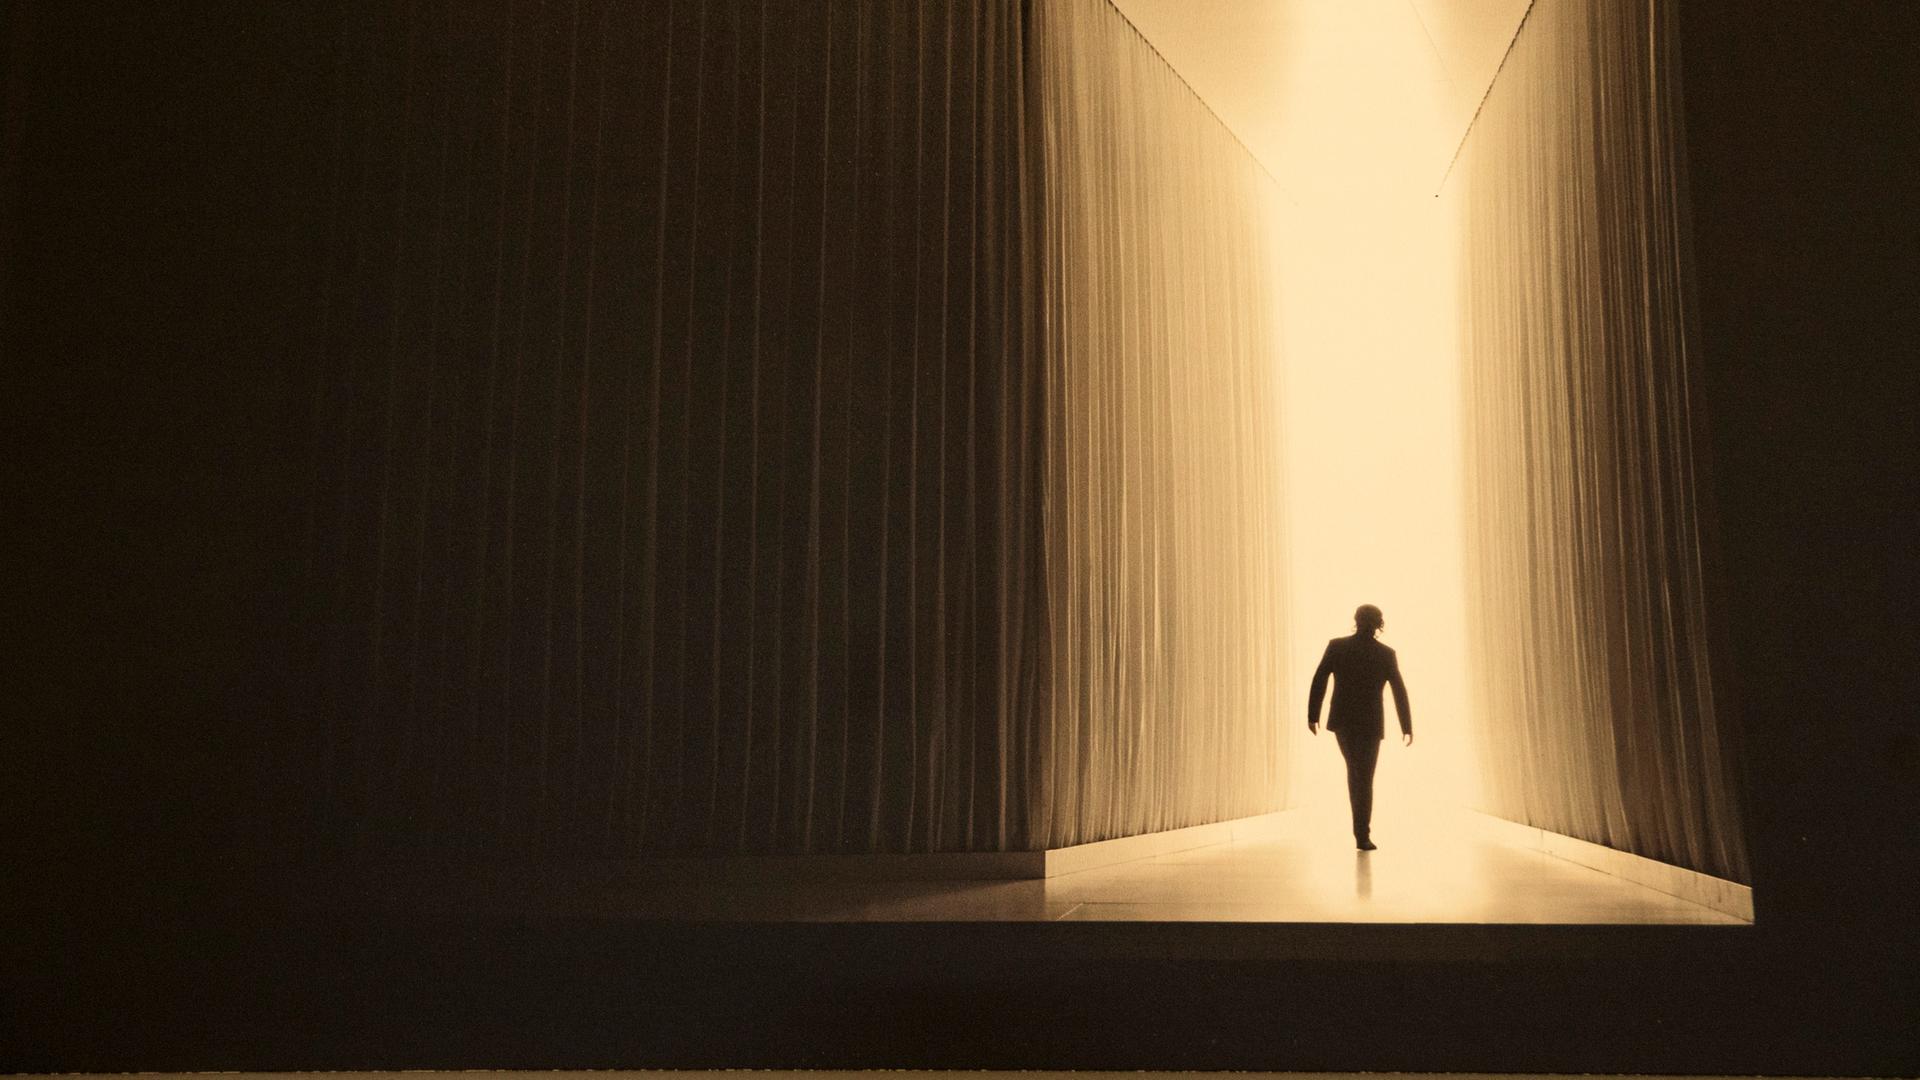 Bühnenbild: dunkle Wände links und rechts führen einen Weg zum Licht auf den sich die Silhouette einer Person abbildet